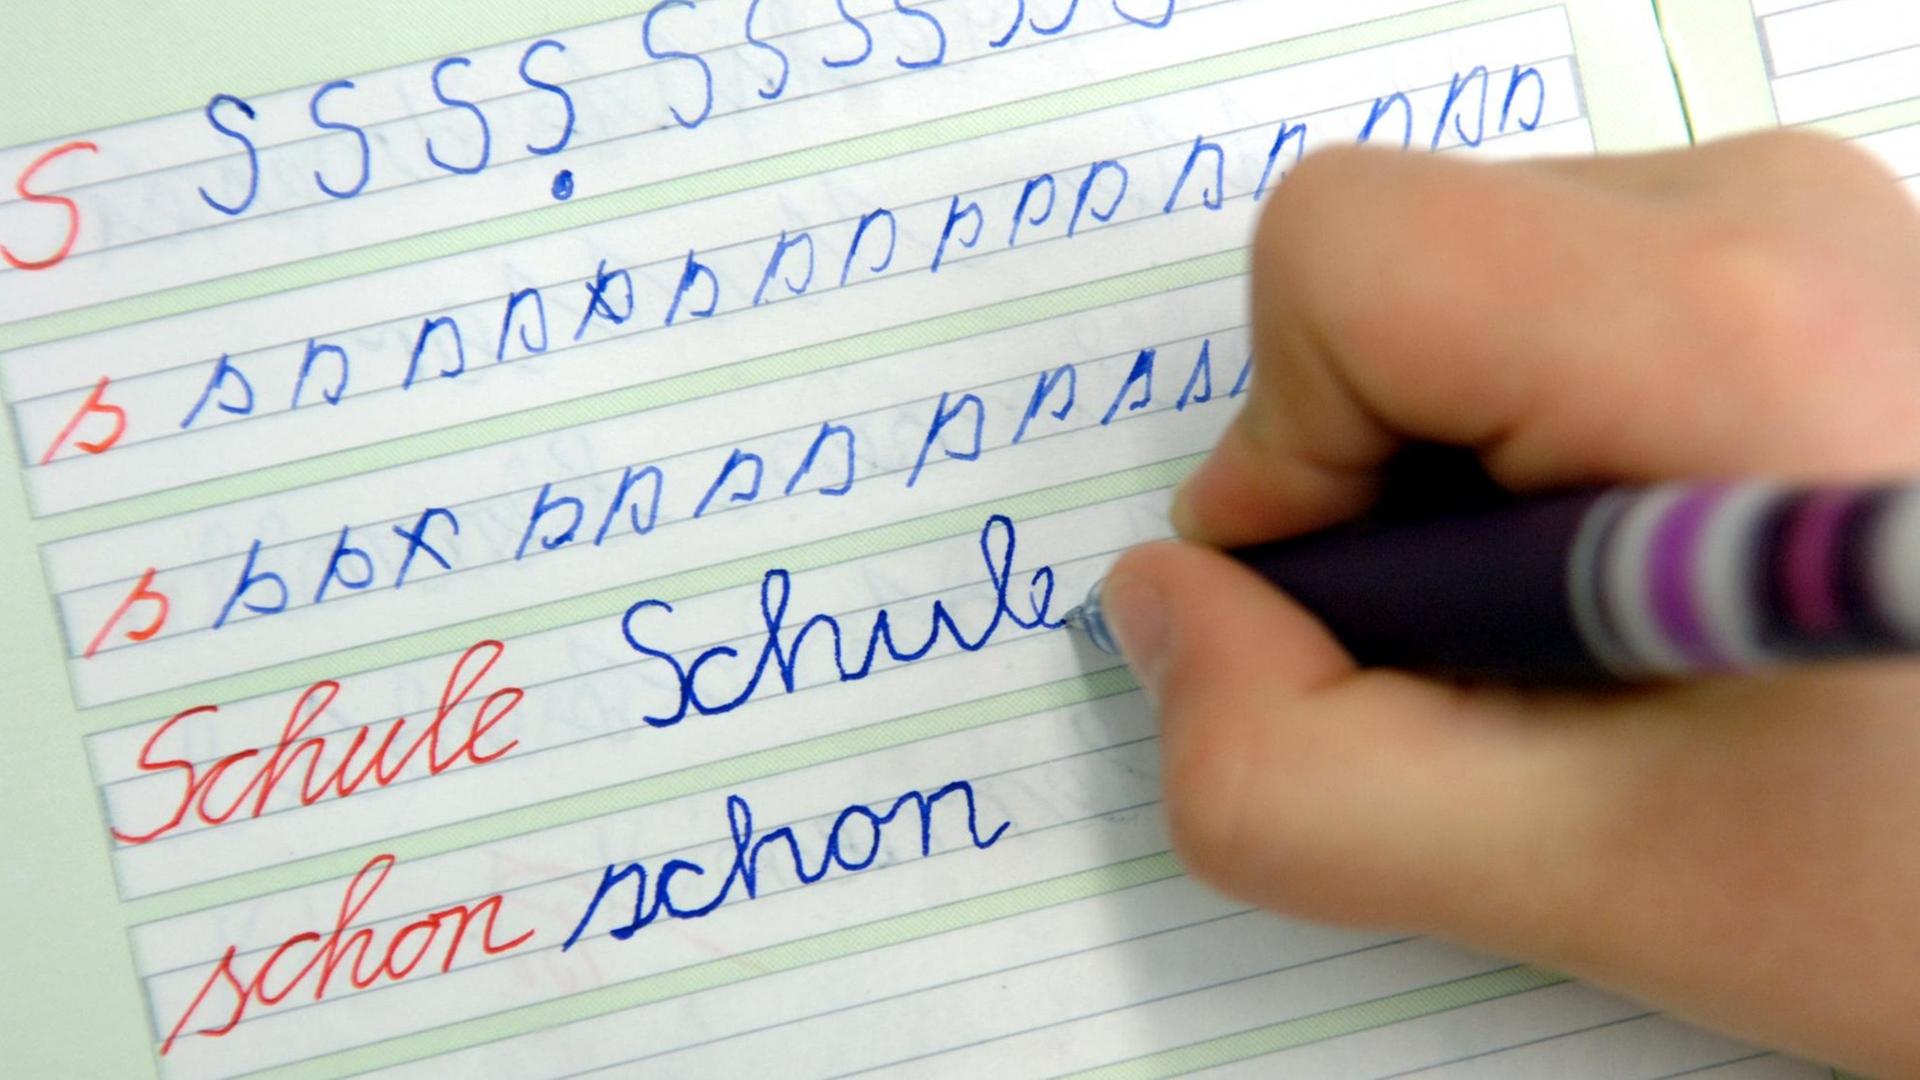 In der Dorfschule in Görzig nahe Beeskow schreibt ein Mädchen im Unterricht das Wort "Schule" in ihr Heft (13.04.2005 ).